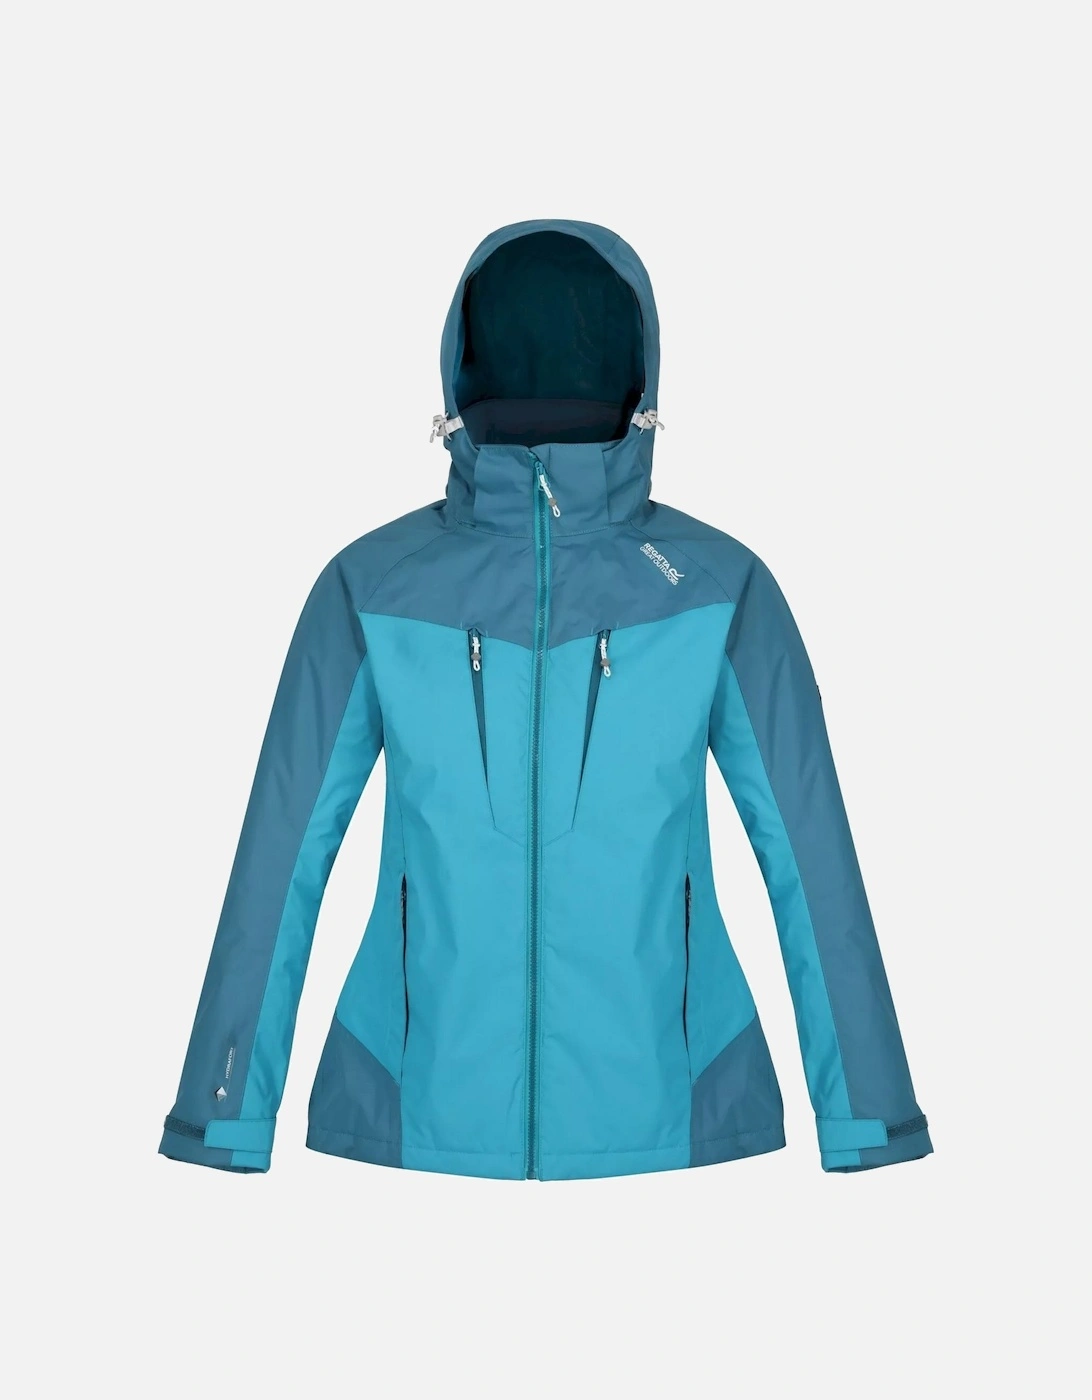 Womens/Ladies Calderdale Winter Waterproof Jacket, 6 of 5